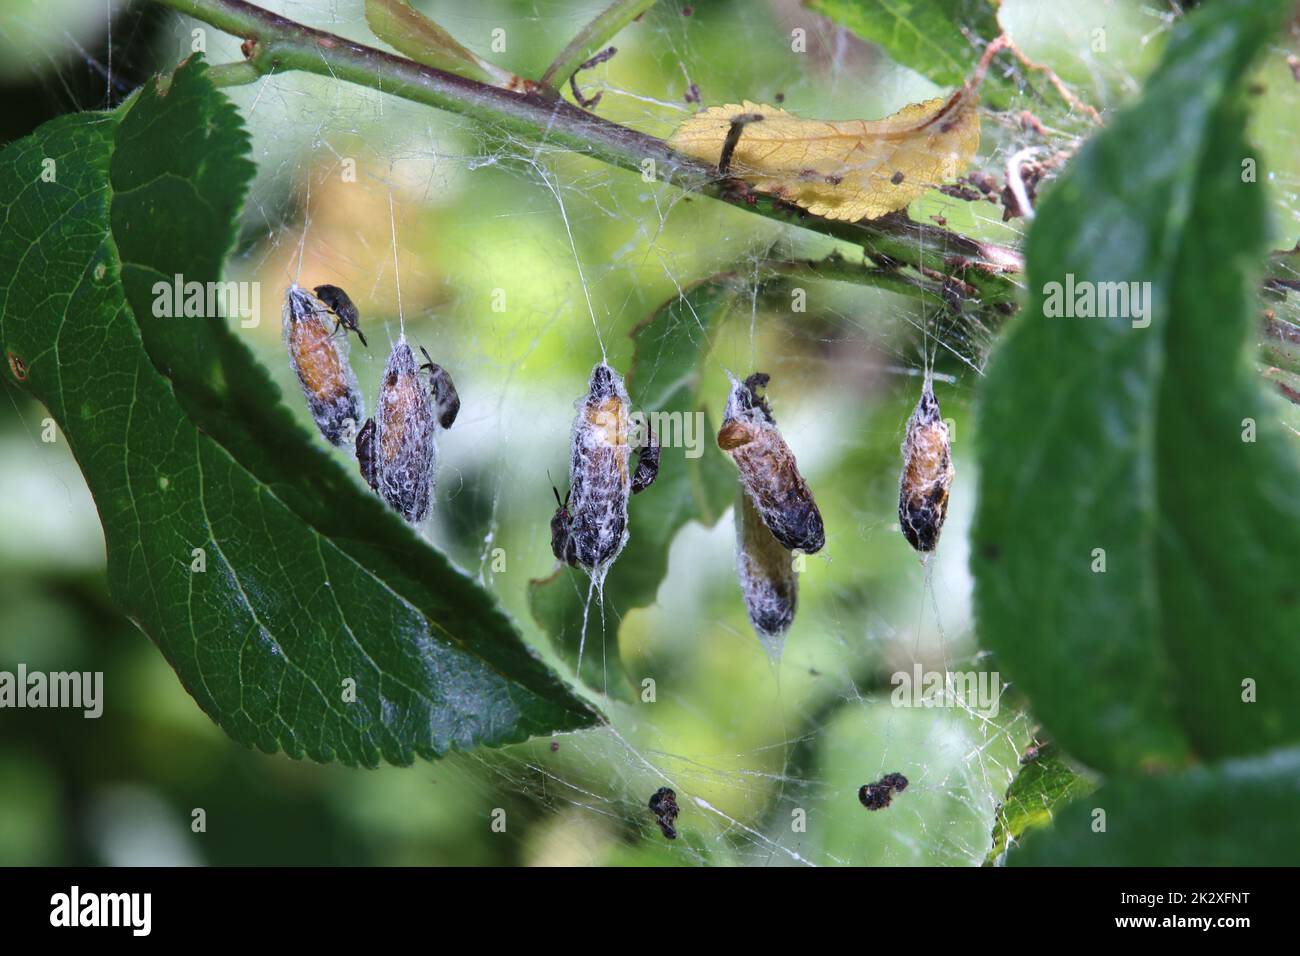 Puppen der Pflaumen-Gespinstmotte (Yponomeuta padella), auf denen sich rÃ¤uberische Weichwanzen (Atractotomus mali) befinden Stock Photo